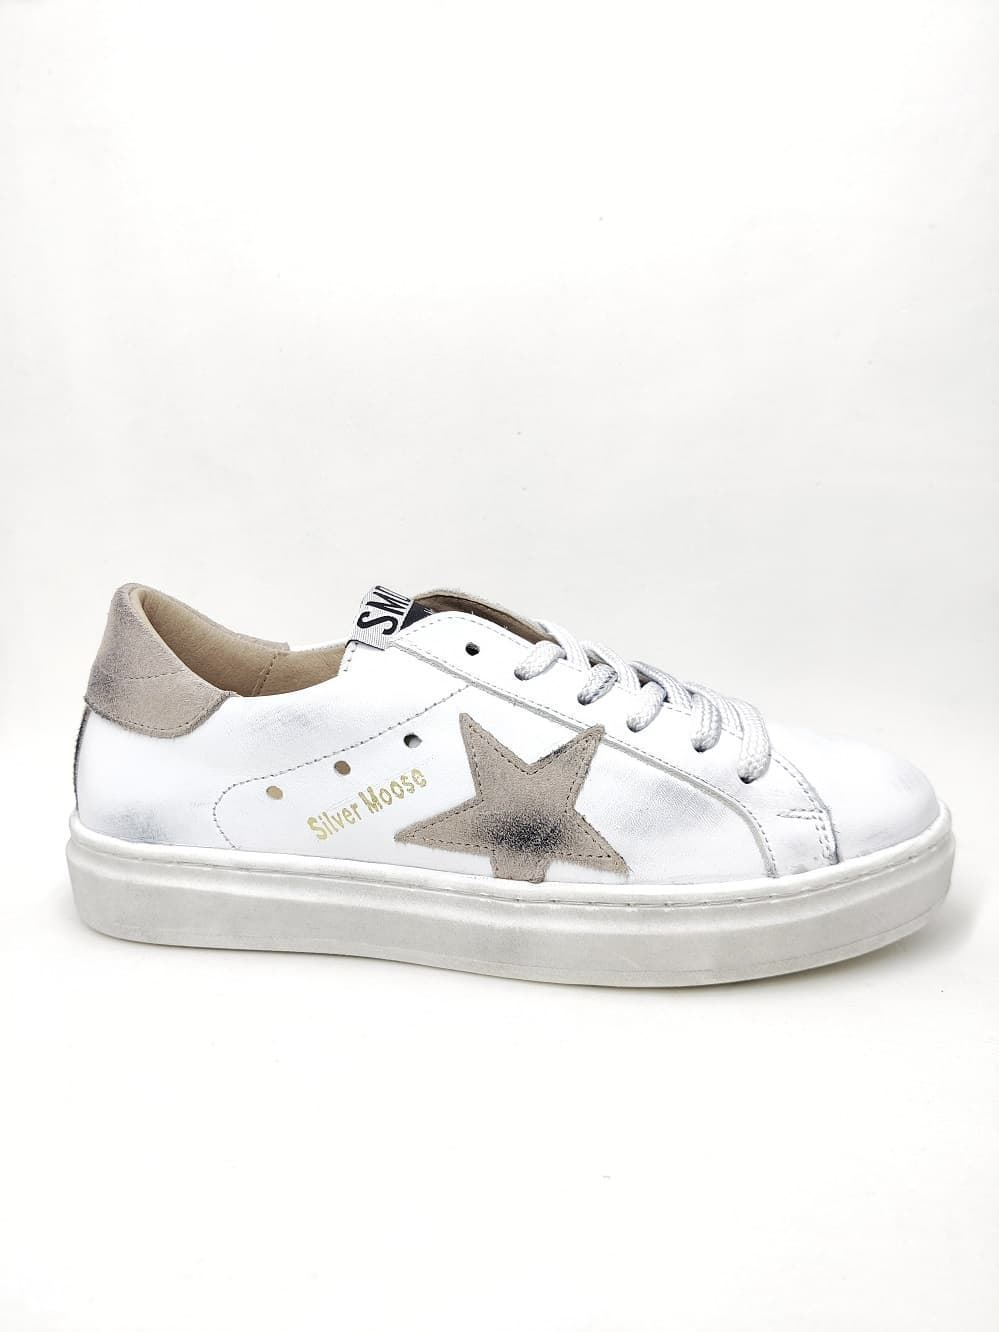 Sneakers Golden Star en piel Blanco Taupe - Imagen 1